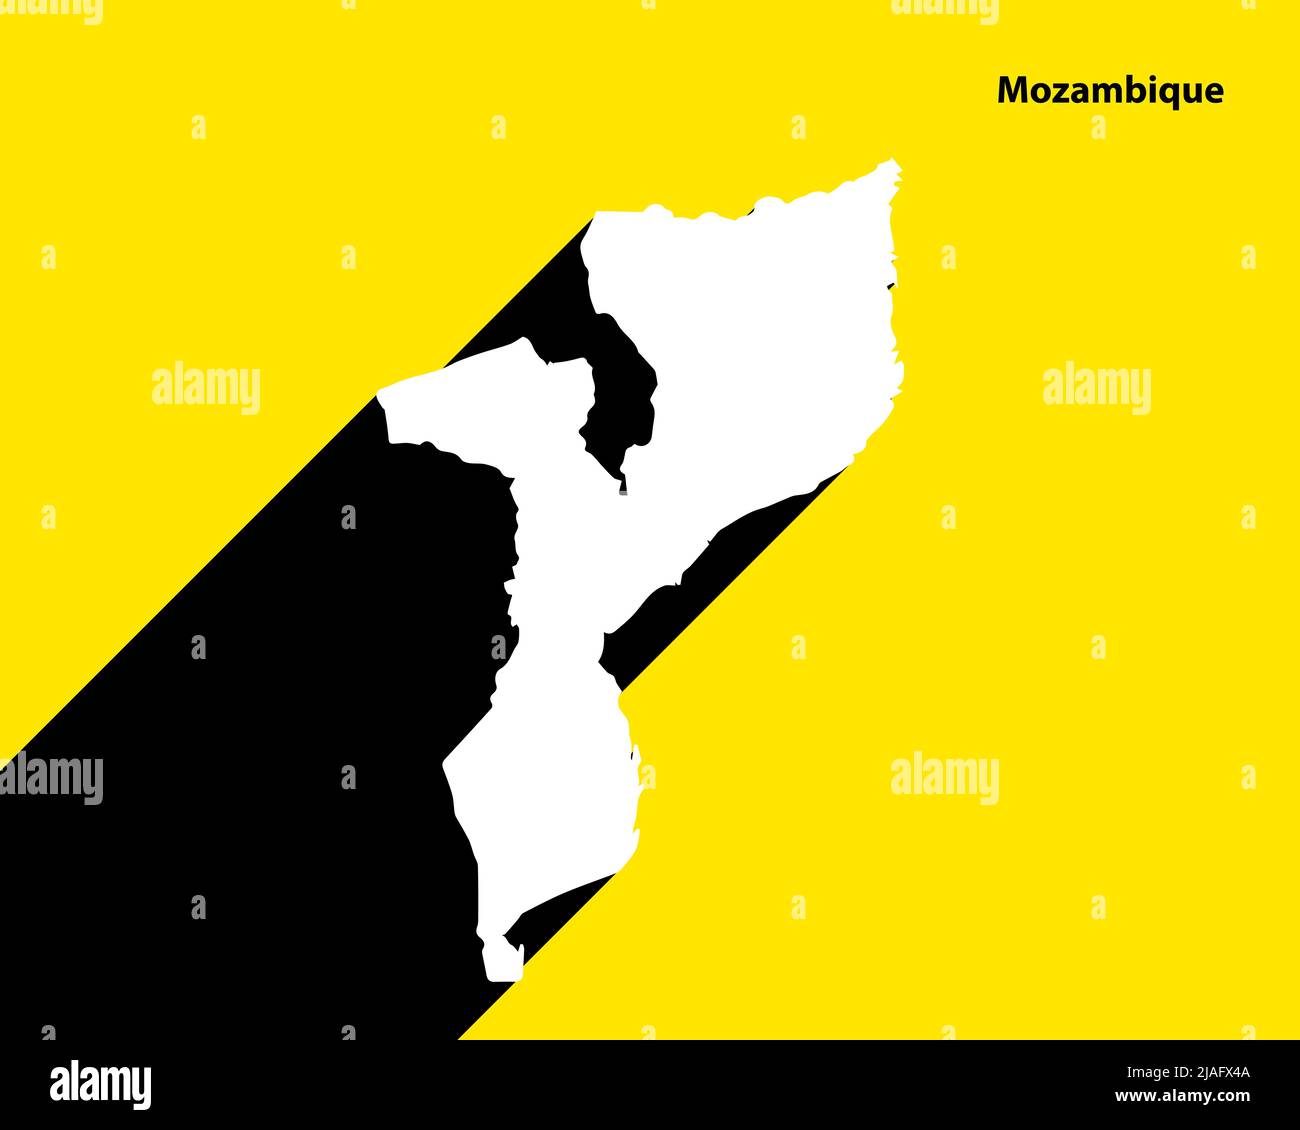 Mozambique carte sur affiche rétro avec ombre longue. Signe vintage facile à éditer, manipuler, redimensionner ou coloriser. Illustration de Vecteur